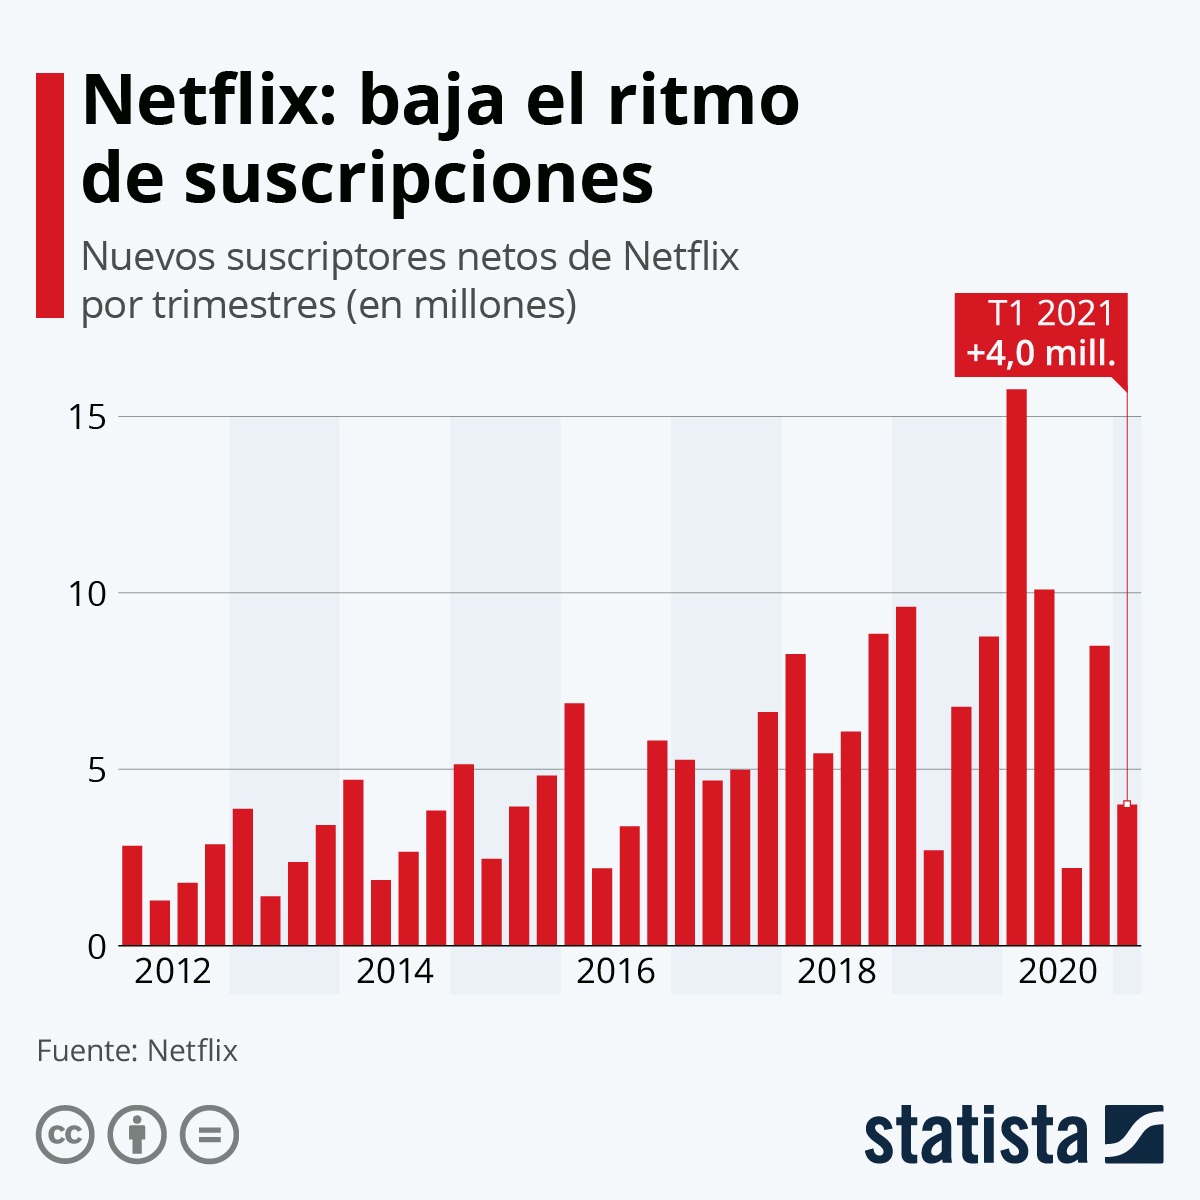 Netflix Estadística